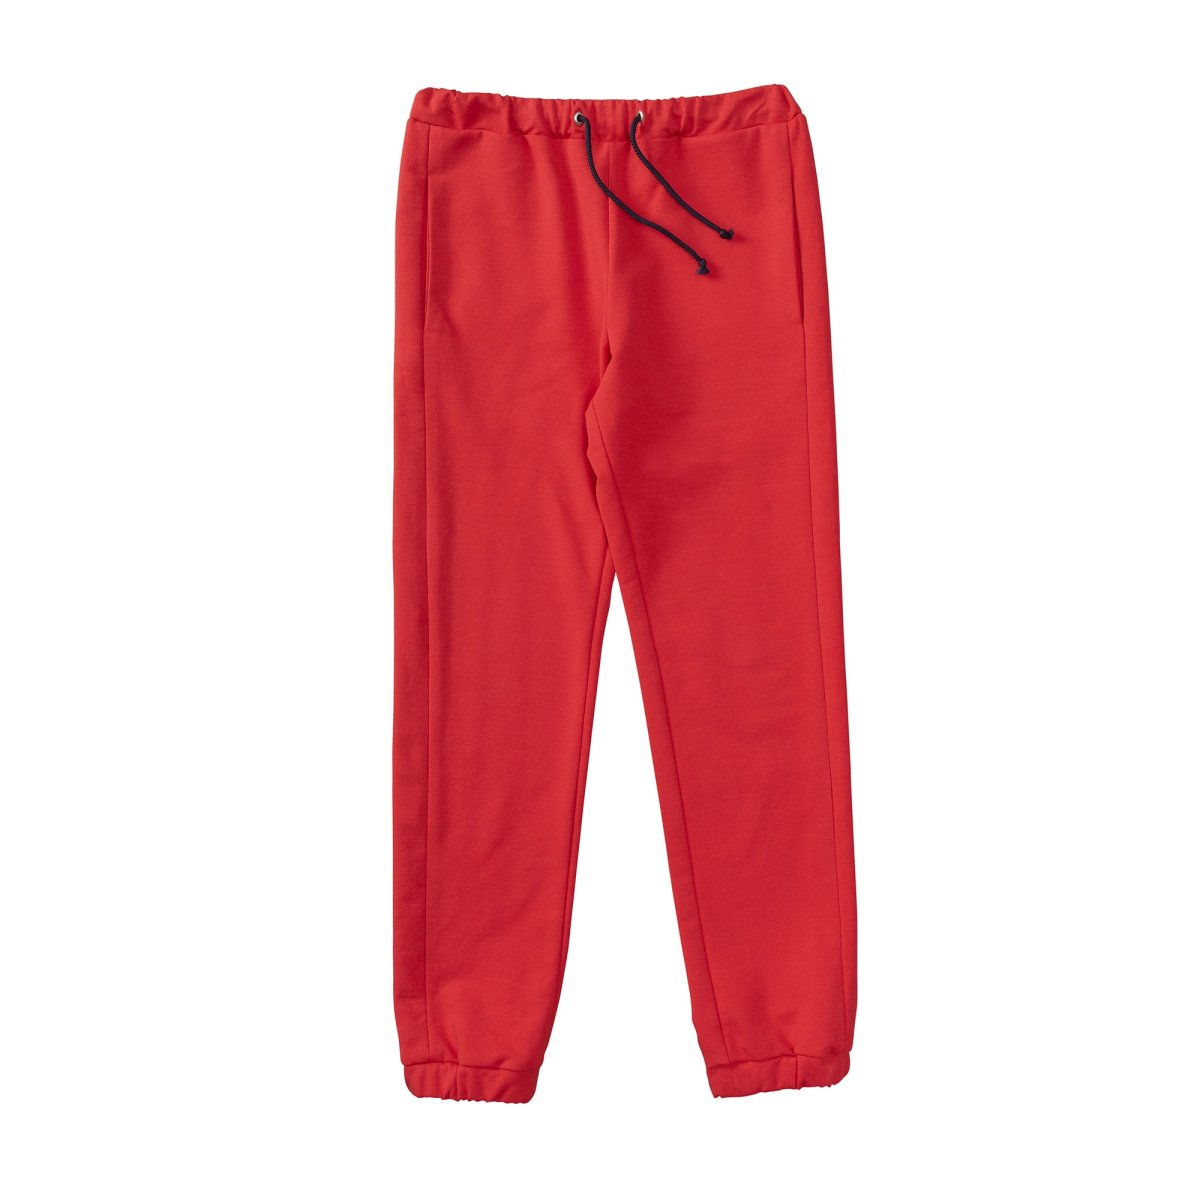 Burda KIDS Pattern 9406 Boys 5 Pocket Jeans~Pants w/Cuff Variation Sz 4-10